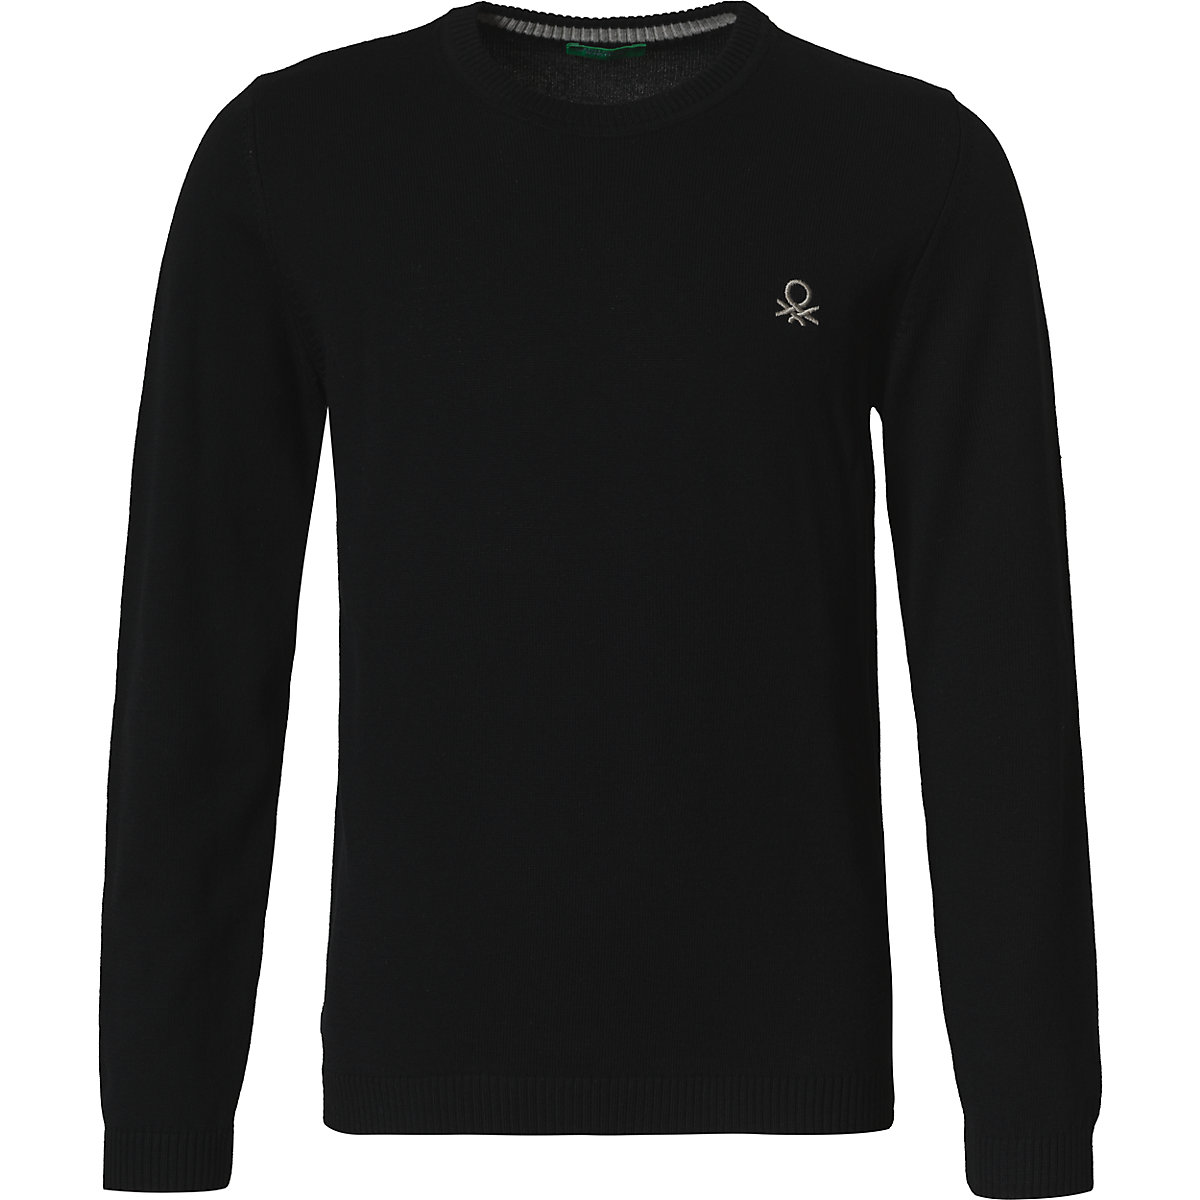 United Colors of Benetton Sweatshirt für Jungen schwarz